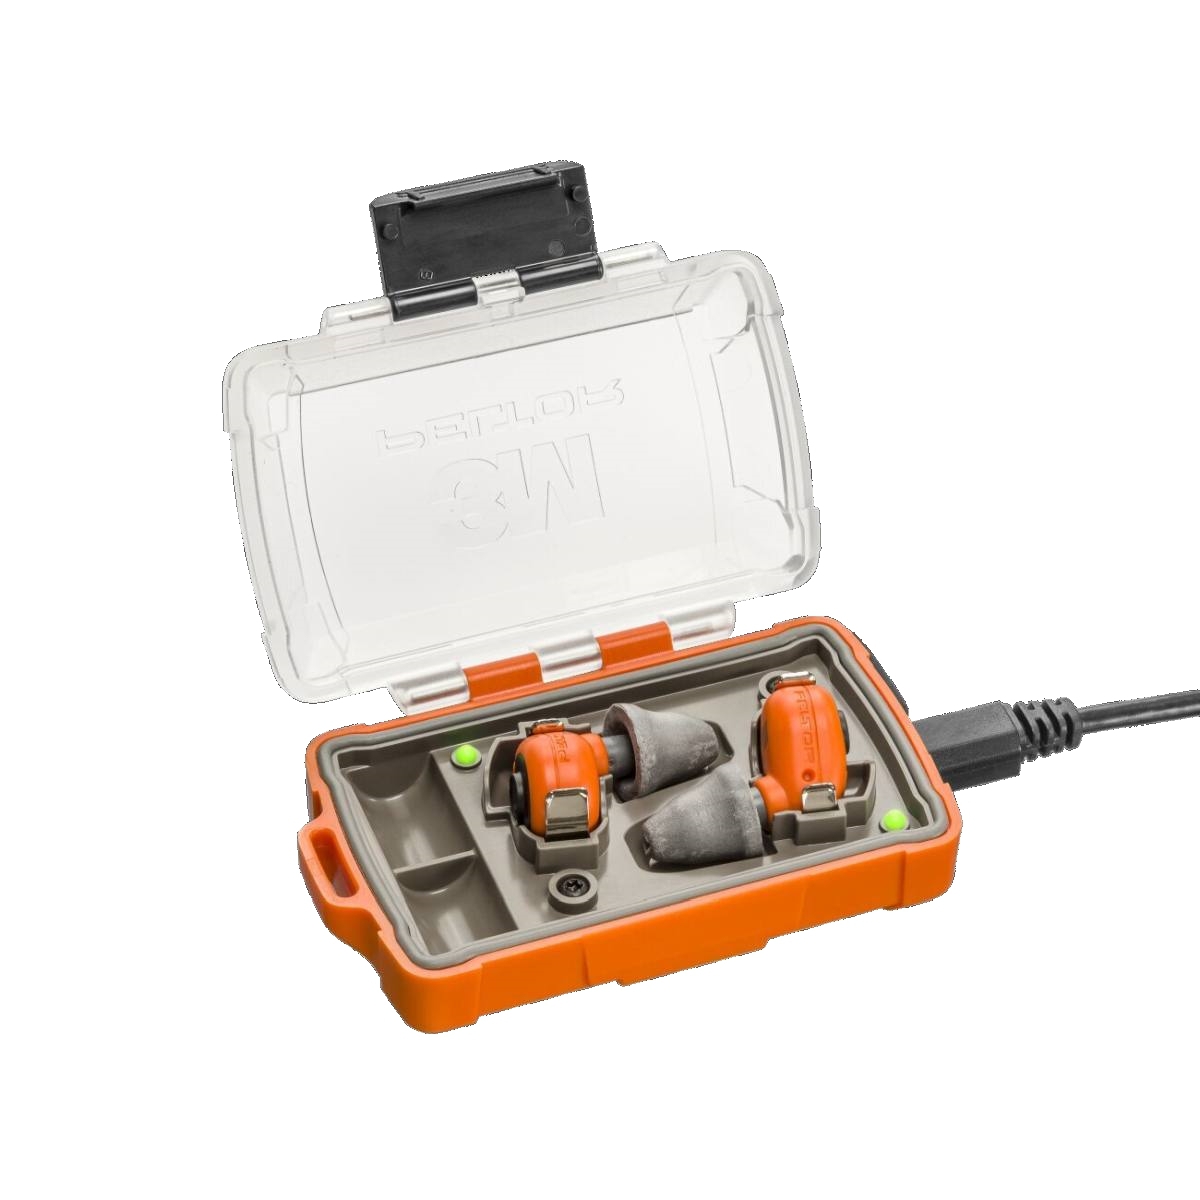 3M PELTOR EEP-100 EU Bouchons d'oreille électroniques orange, kit : les bouchons et la station de recharge (avec couvercle fermé et ports USB) sont classés IP-54 et résistants à l'eau